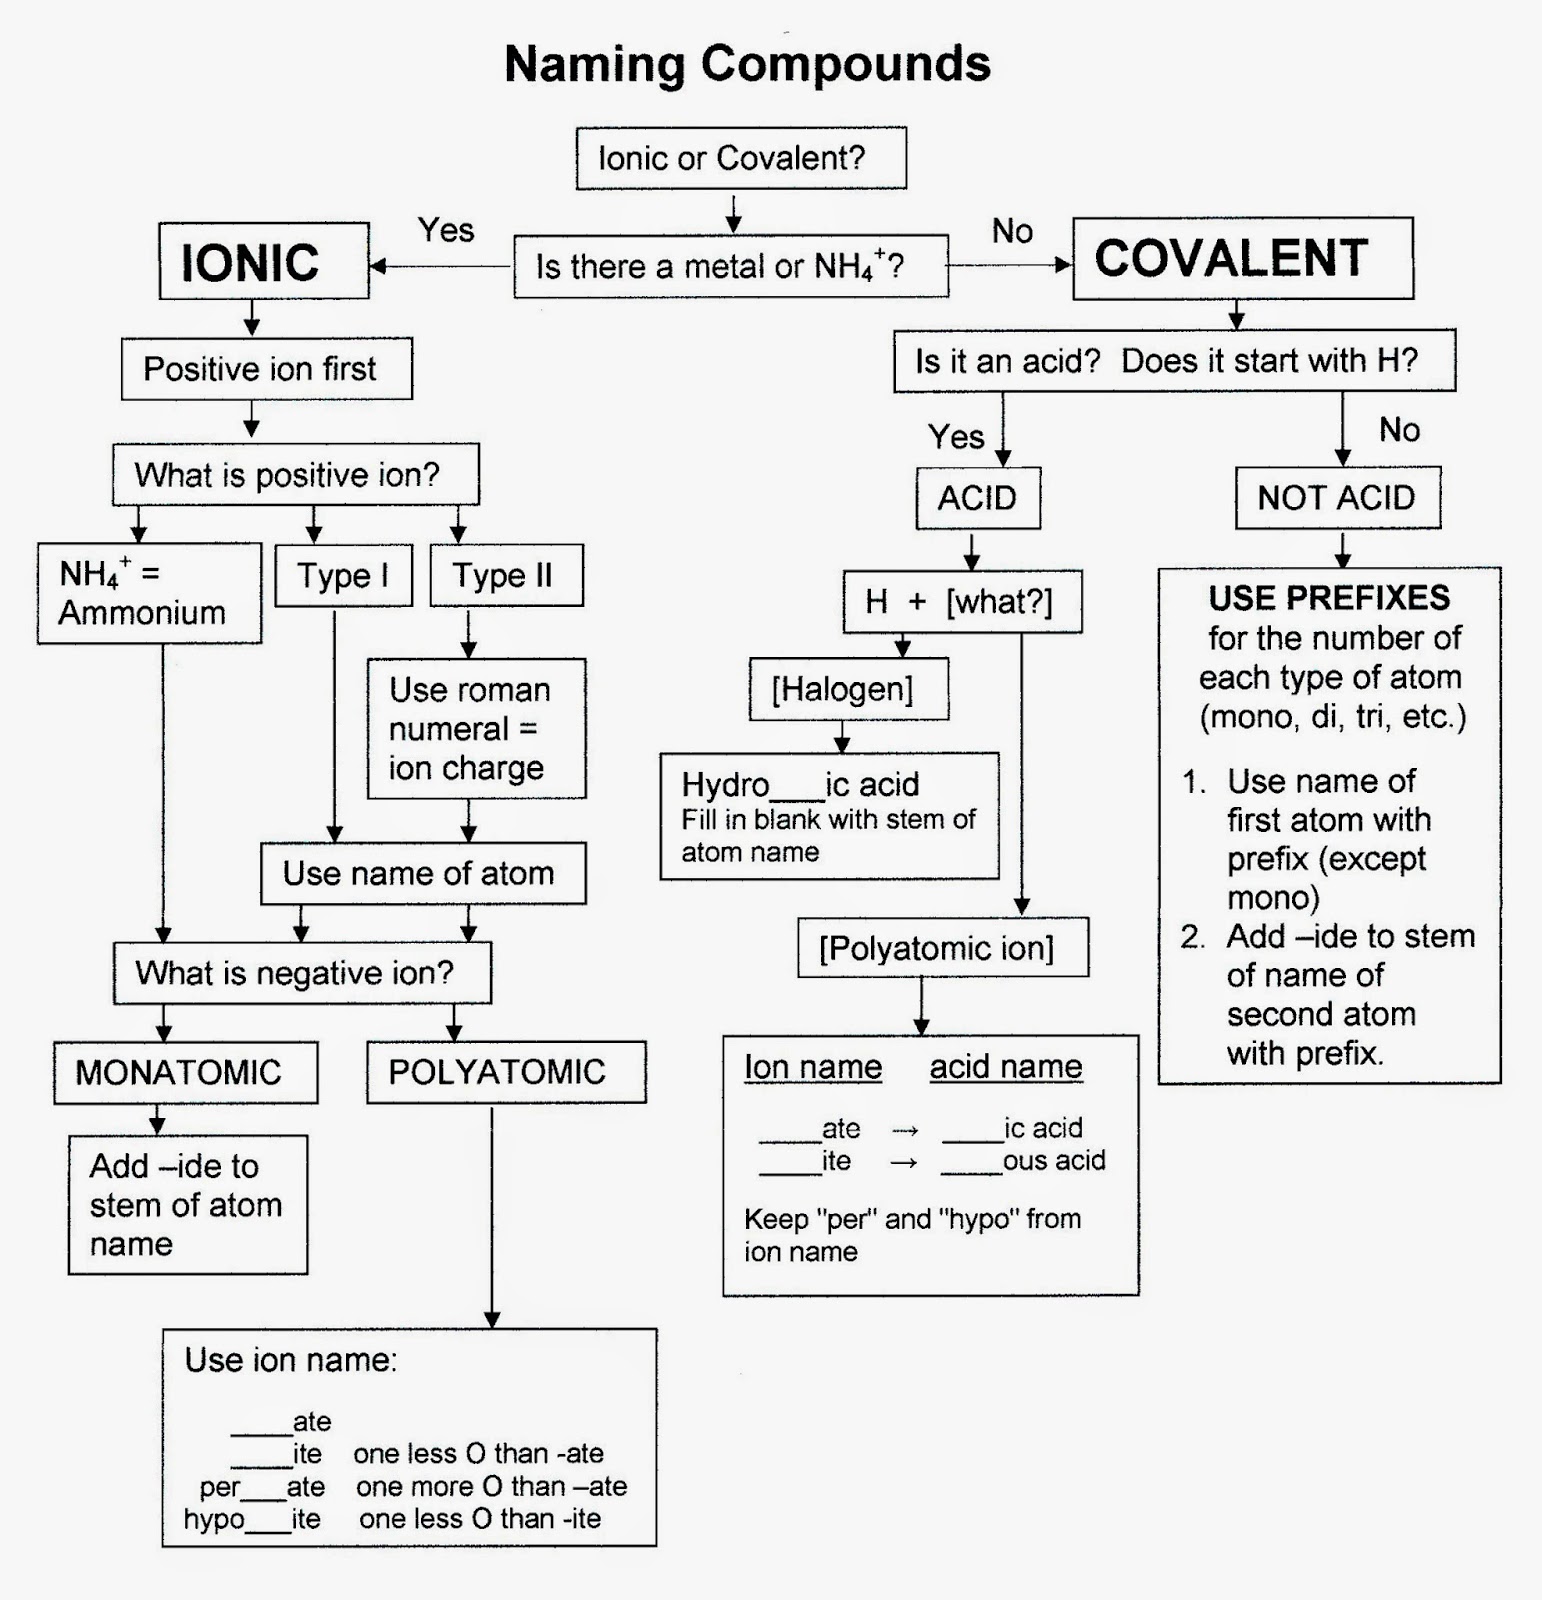 Chemistry Nomenclature Naming Compounds Flowchart Image